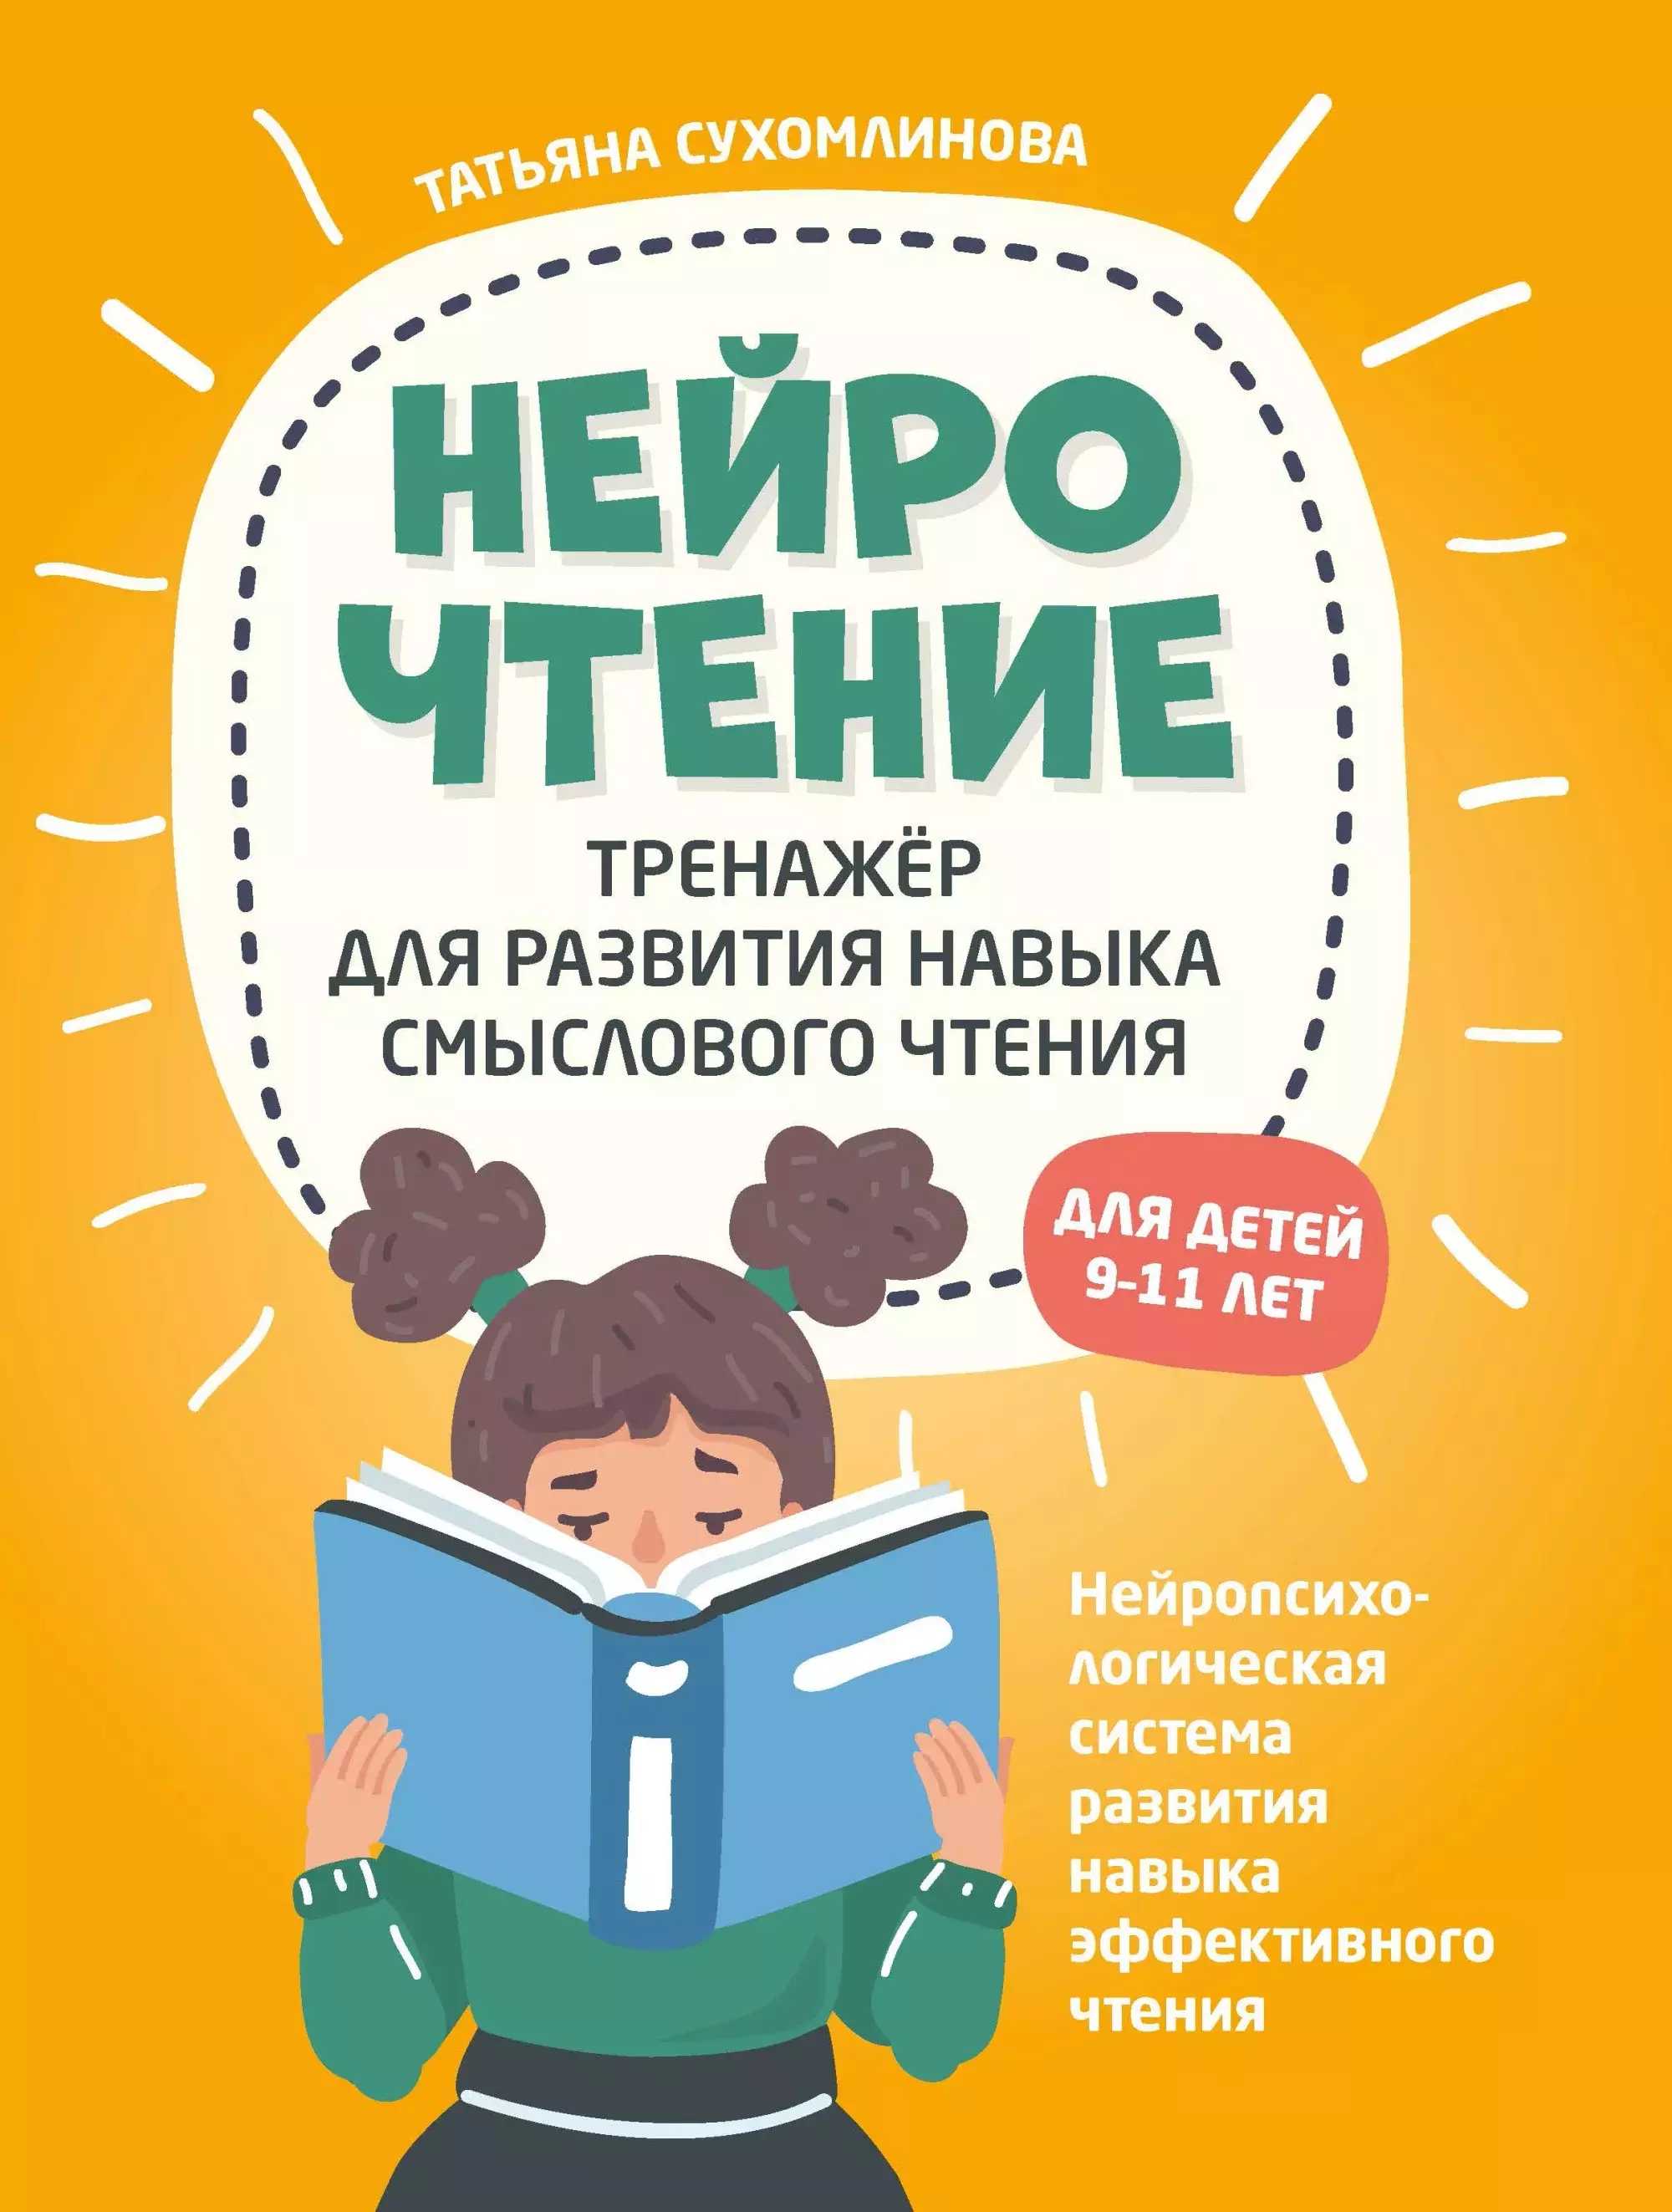 Сухомлинова Татьяна Александровна - НейроЧтение: тренажер для развития навыка смыслового чтения. Для детей 9-11 лет